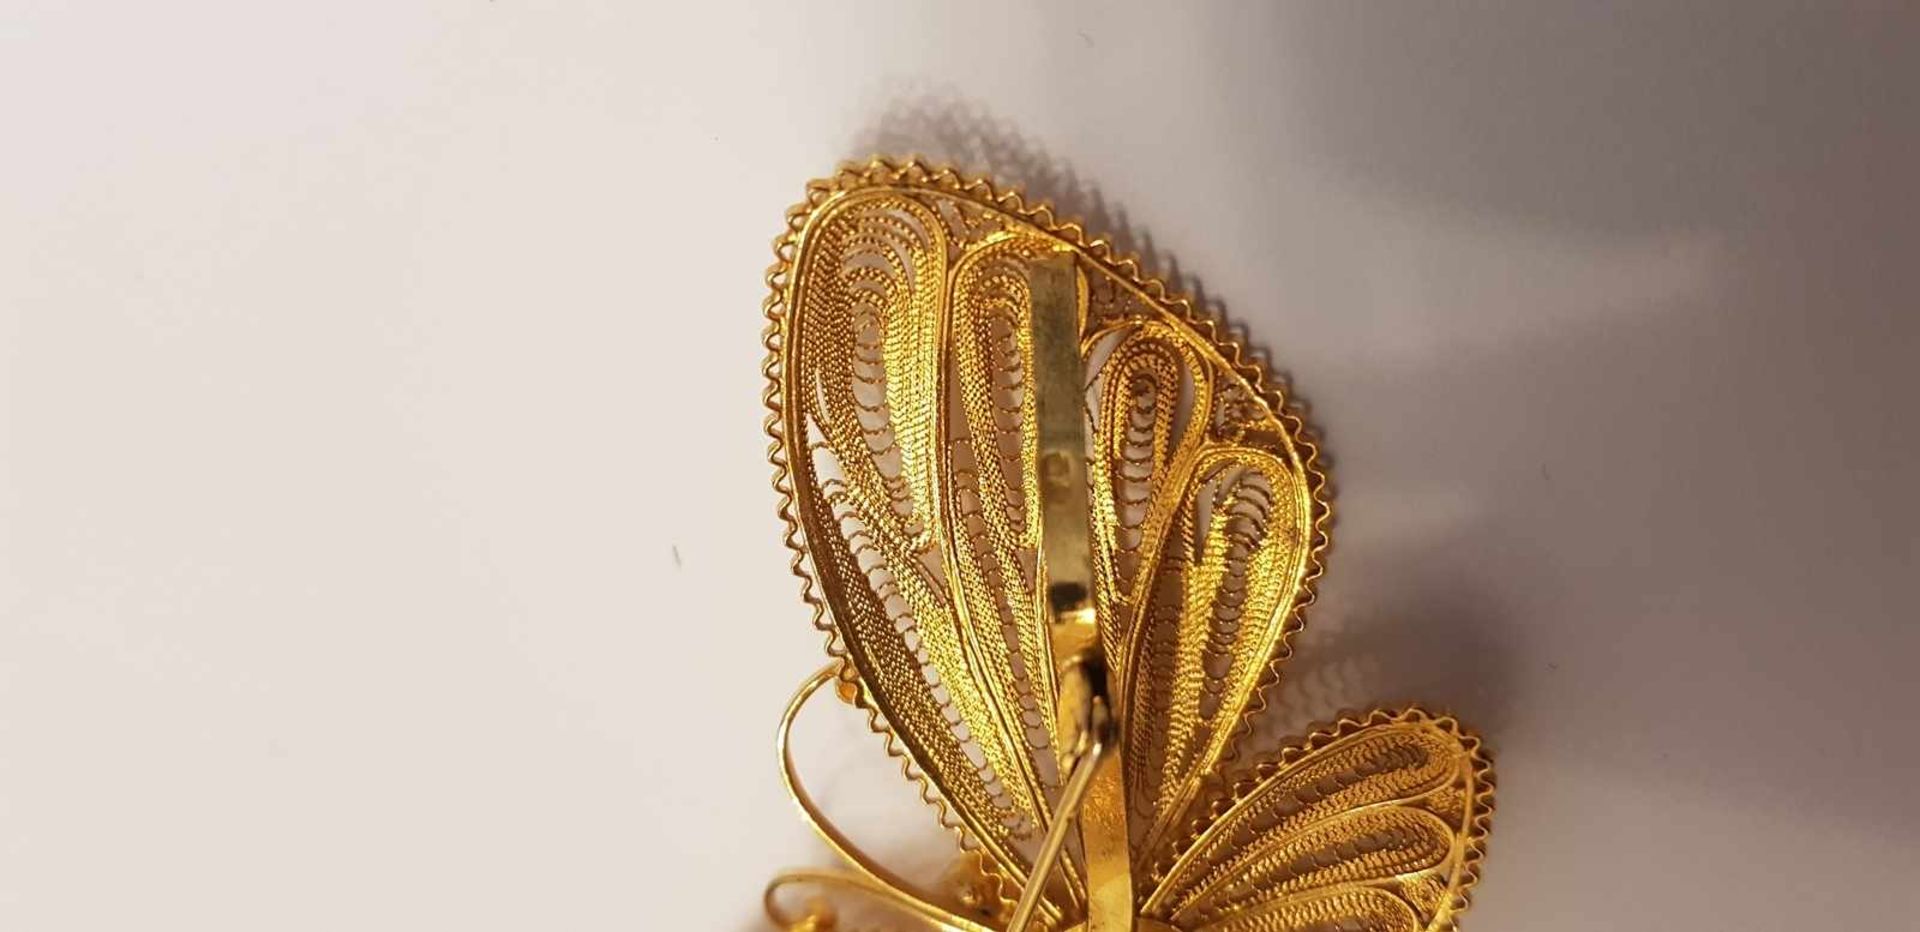 Brosche Schmetterling , Silber 835 vergoldet, Filigranarbeit 17,4g , - Bild 3 aus 3